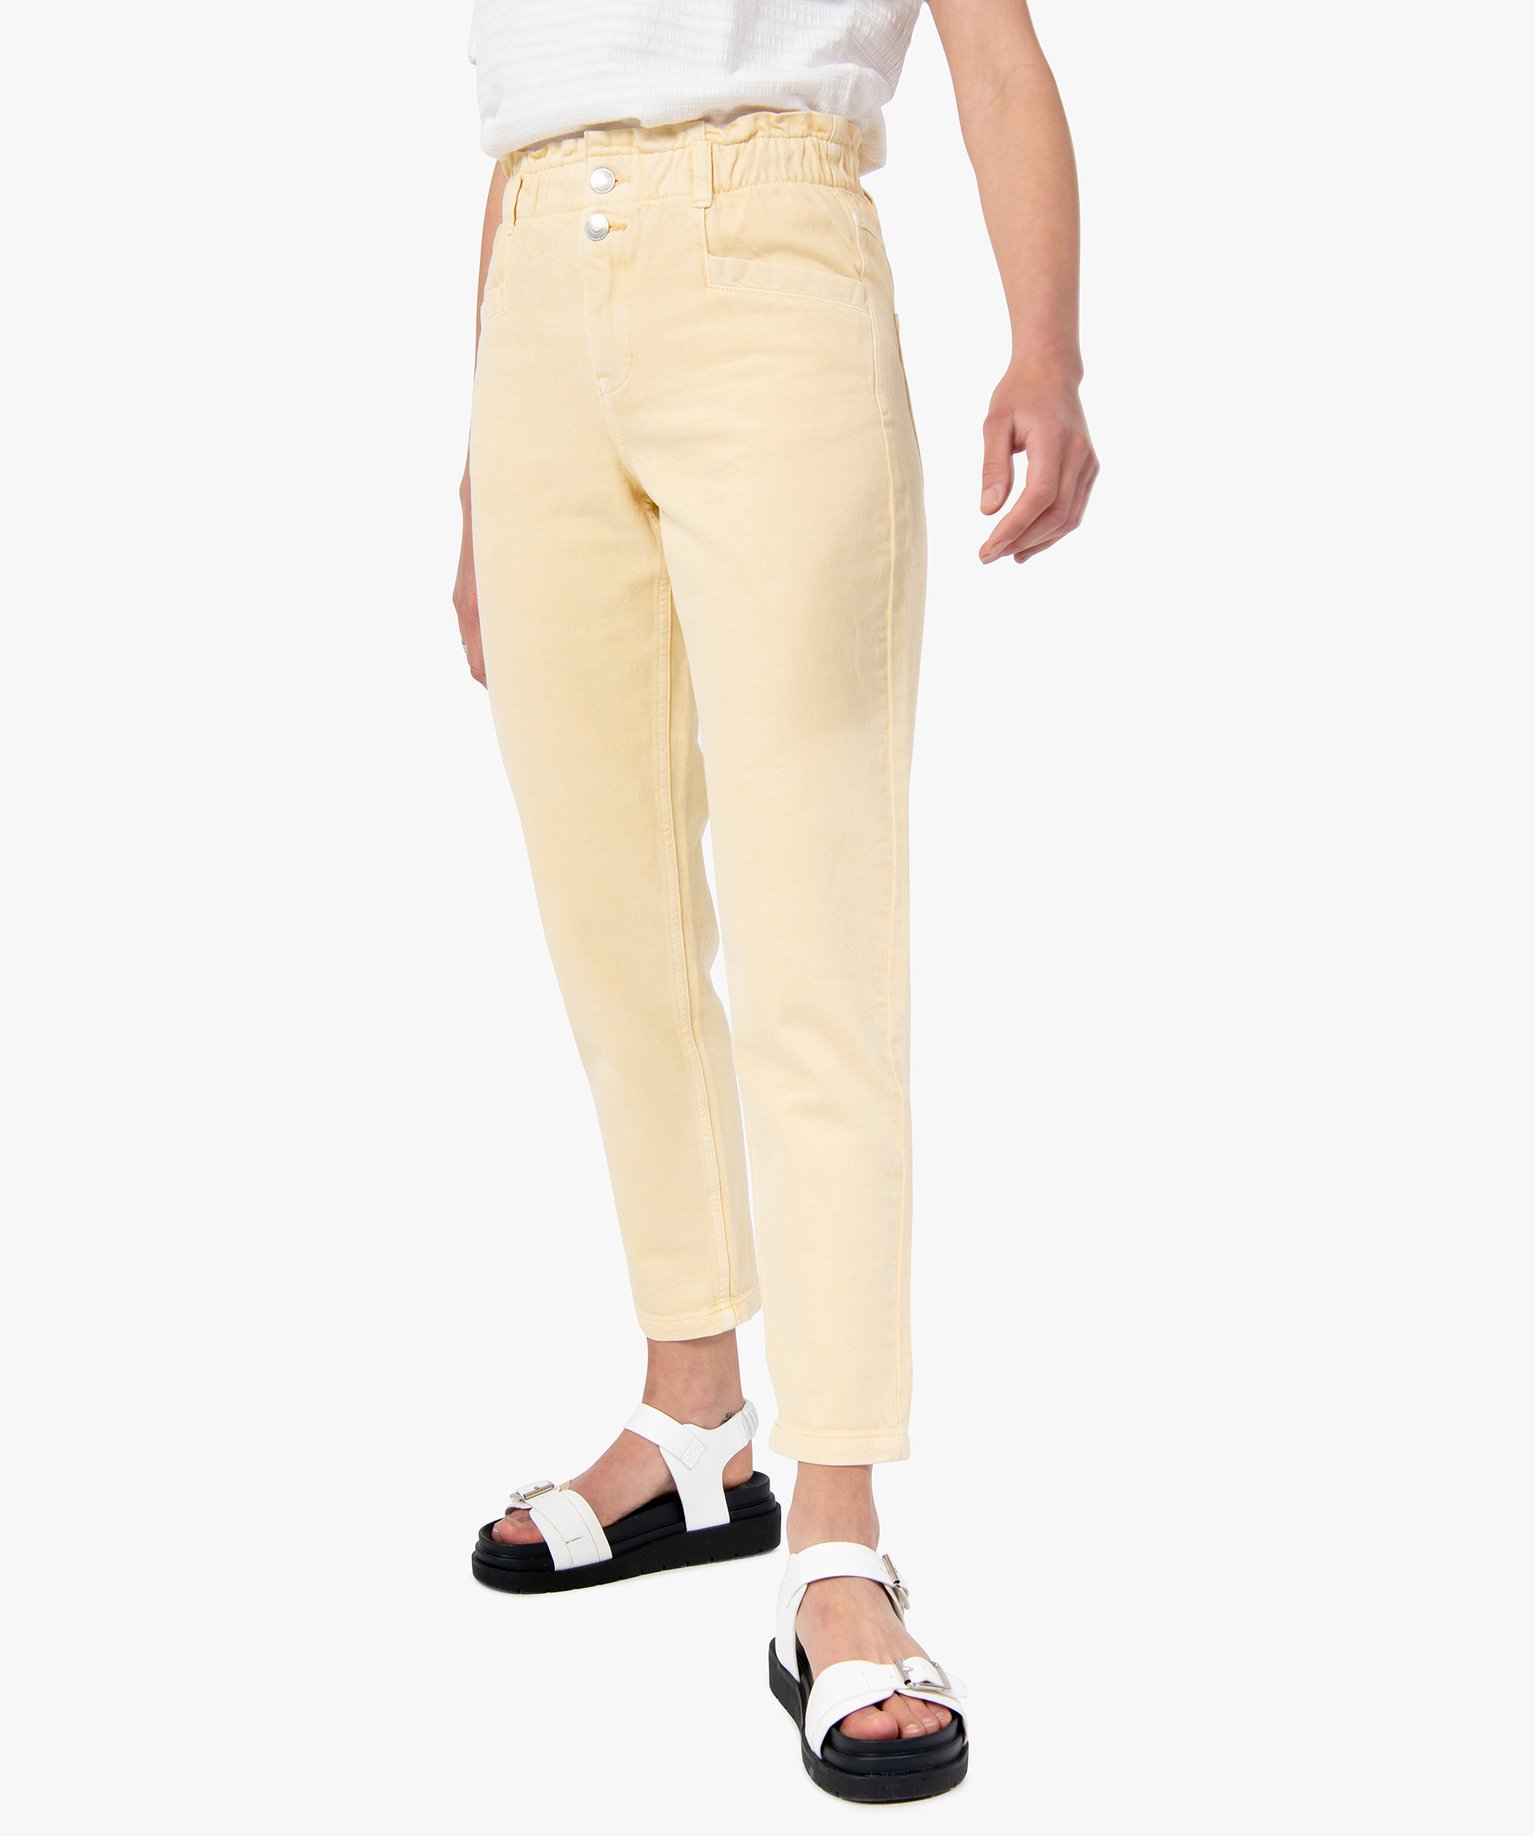 pantalon femme en toile denim avec ceinture elastique jaune pantacourts